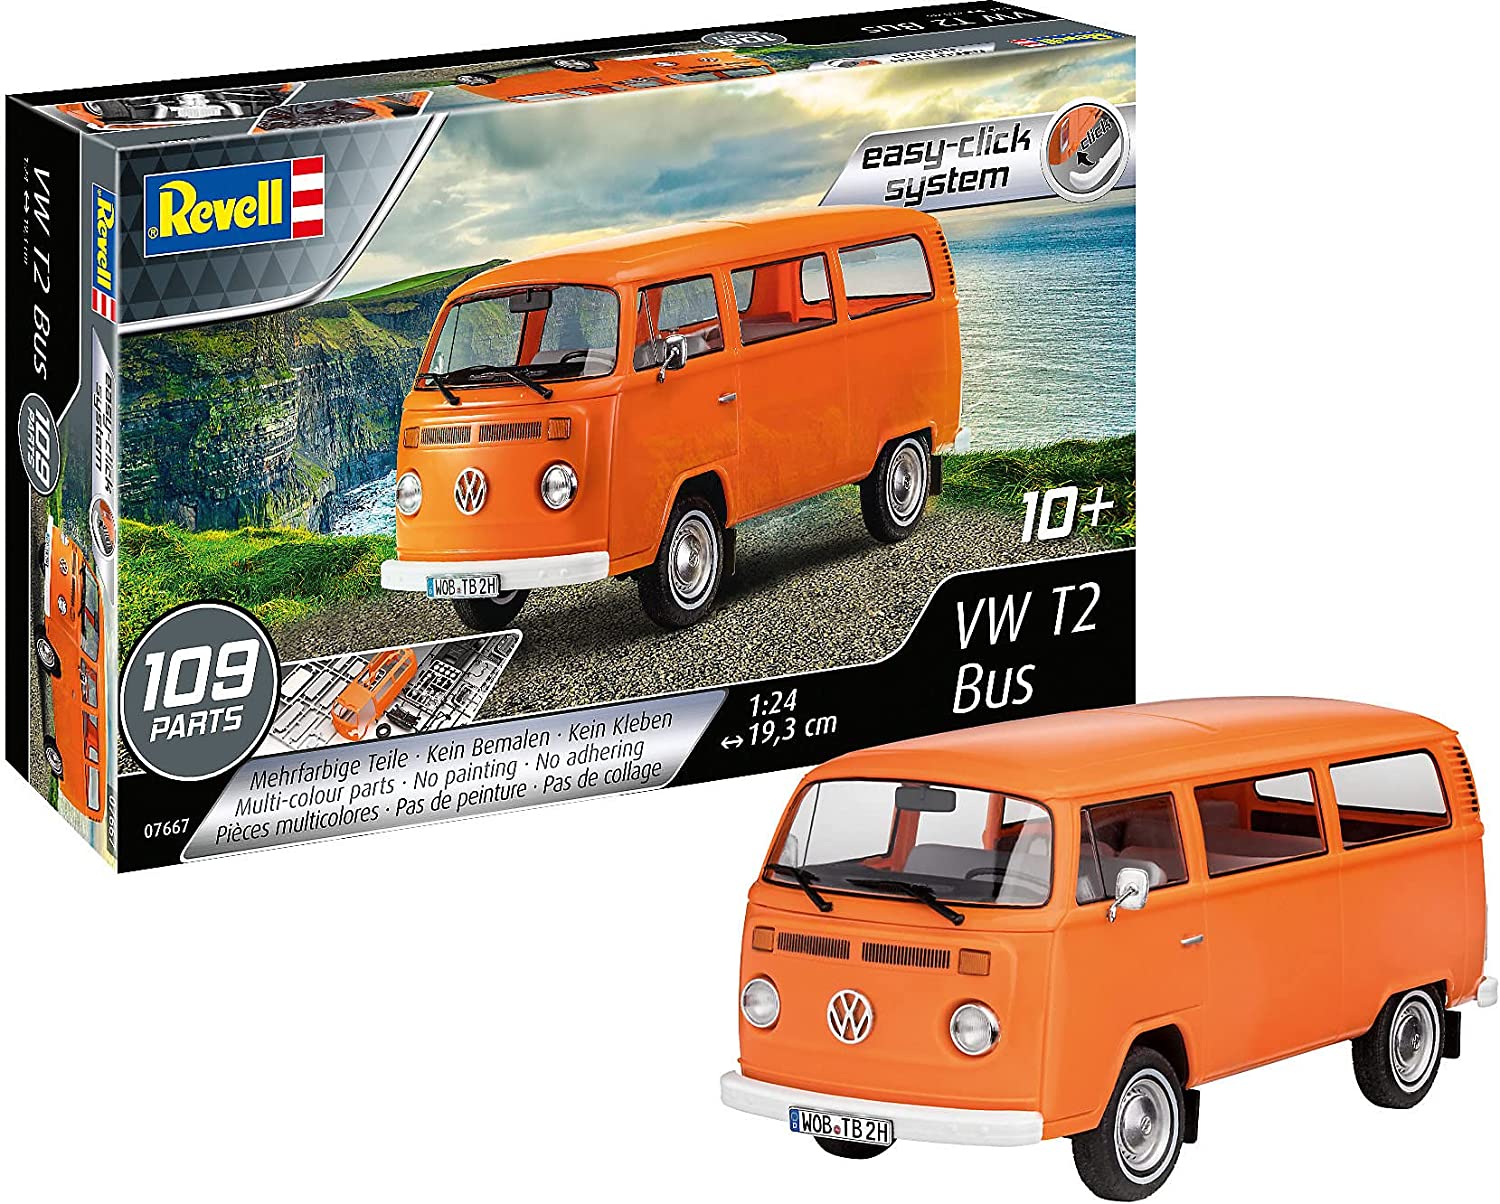 Bild zu 1:24 Automodell-Bausatz Revell Volkswagen T2 Bus für 17,10€ (Vergleich: 25,94€)